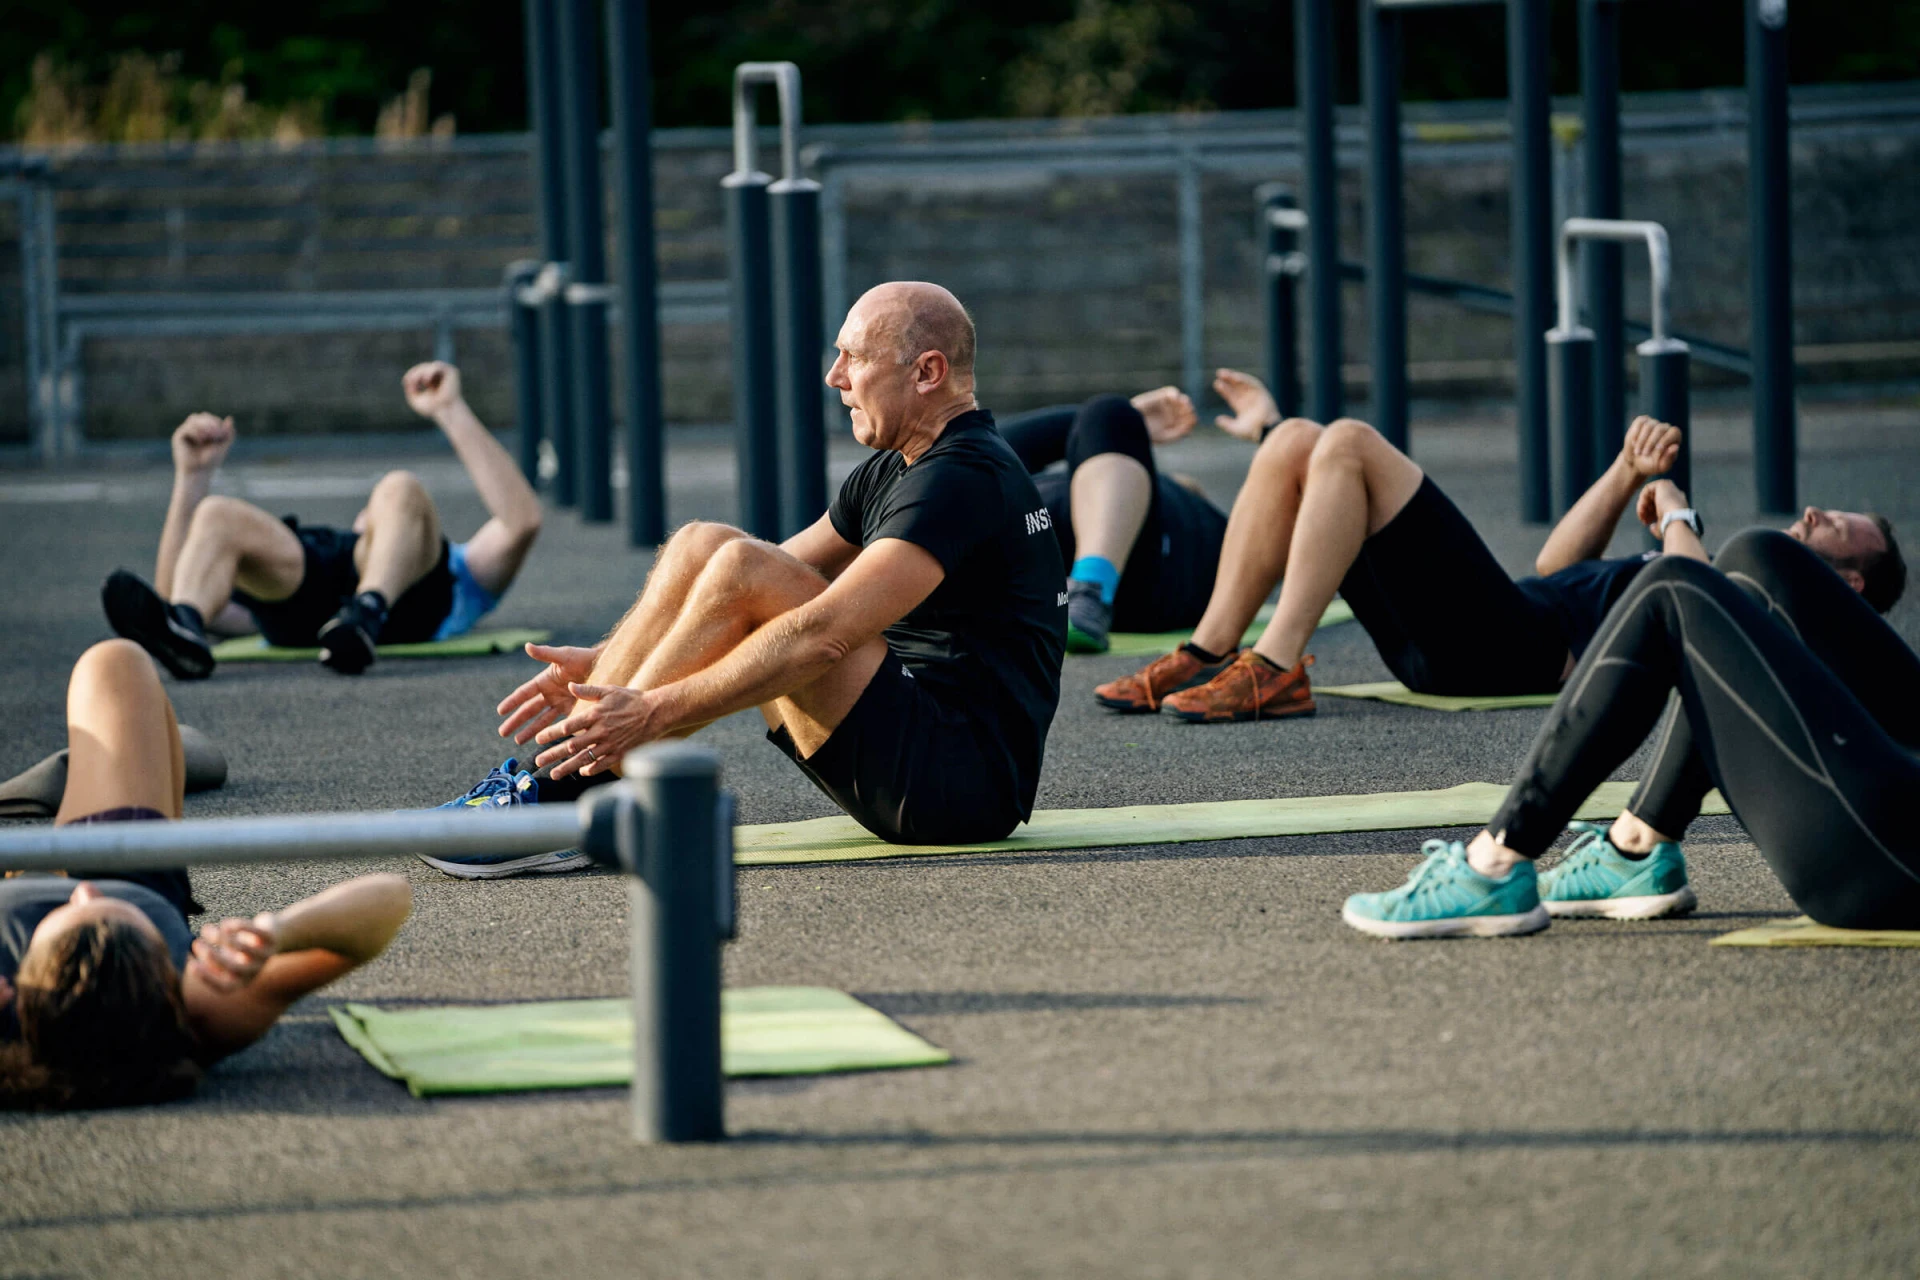 un grupo de personas haciendo ejercicio en un gimnasio de calistenia al aire libre en un parque